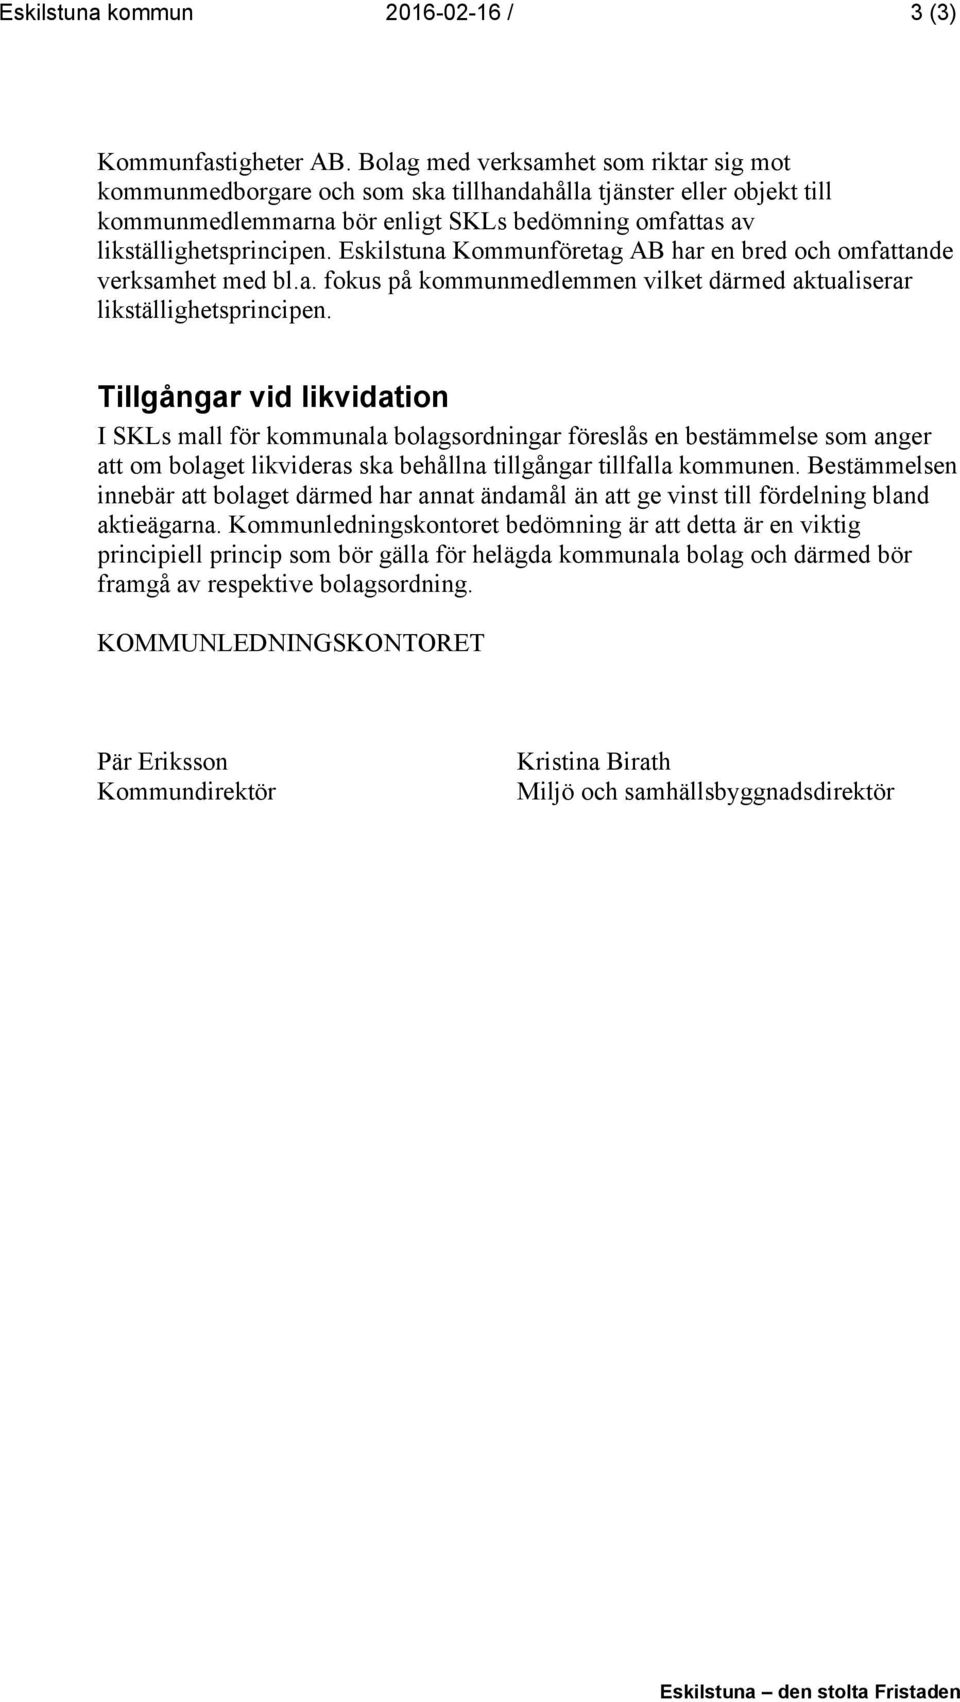 Eskilstuna Kommunföretag AB har en bred och omfattande verksamhet med bl.a. fokus på kommunmedlemmen vilket därmed aktualiserar likställighetsprincipen.